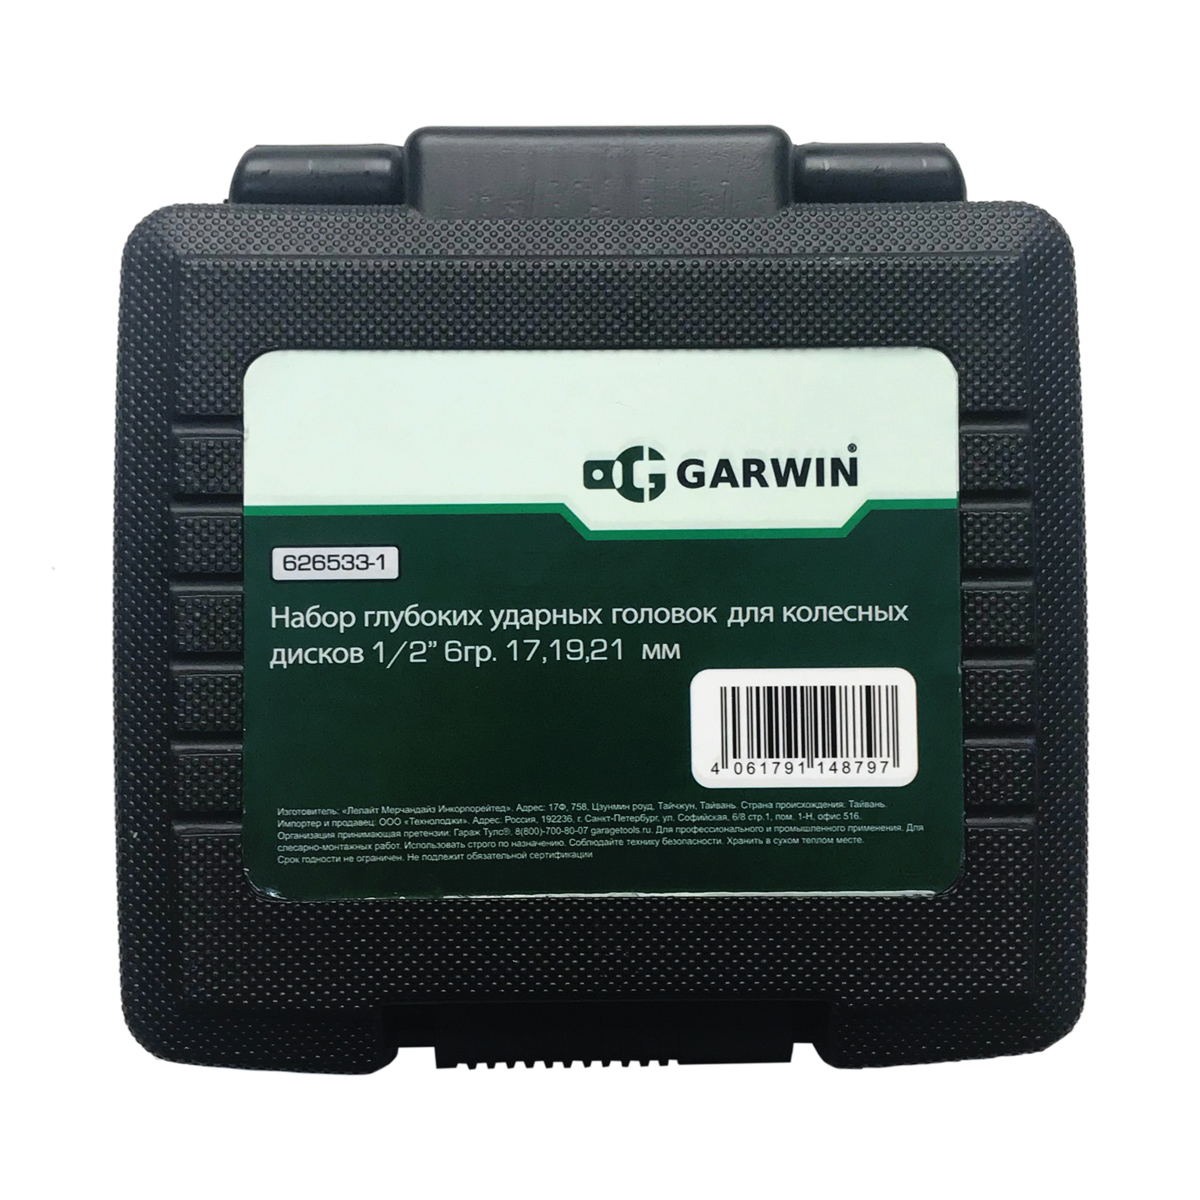 Набор глубоких ударных головок для колесных дисков 1/2" 6гр. GARWIN Garwin  626533-1_1